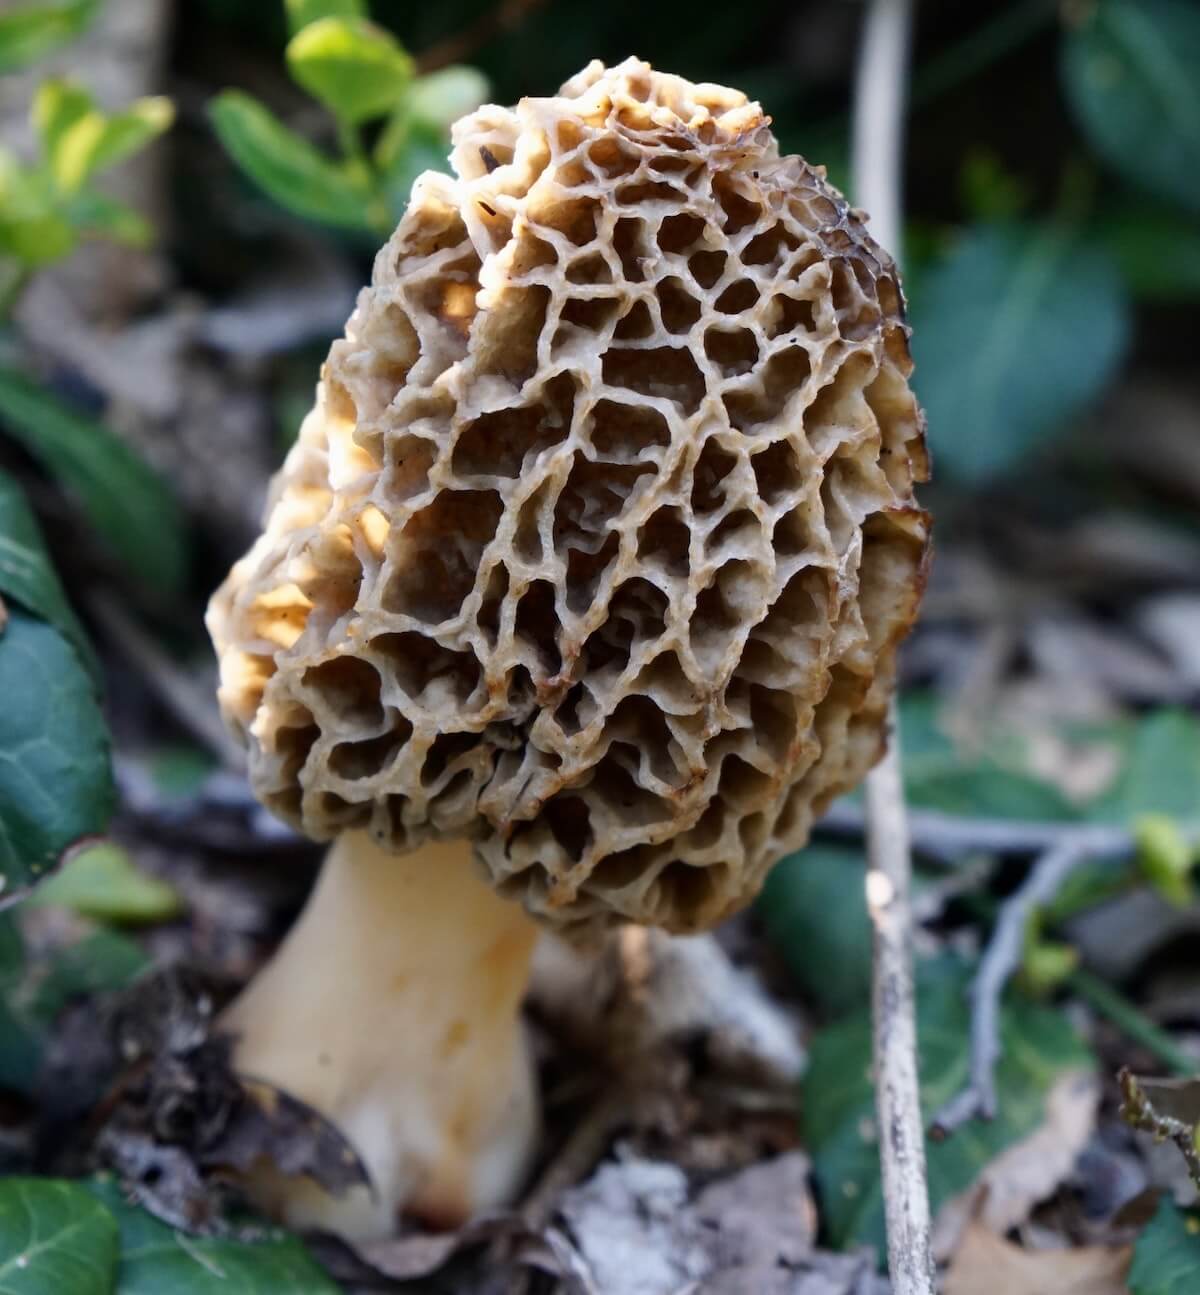 A single morel mushroom growing in the woods.